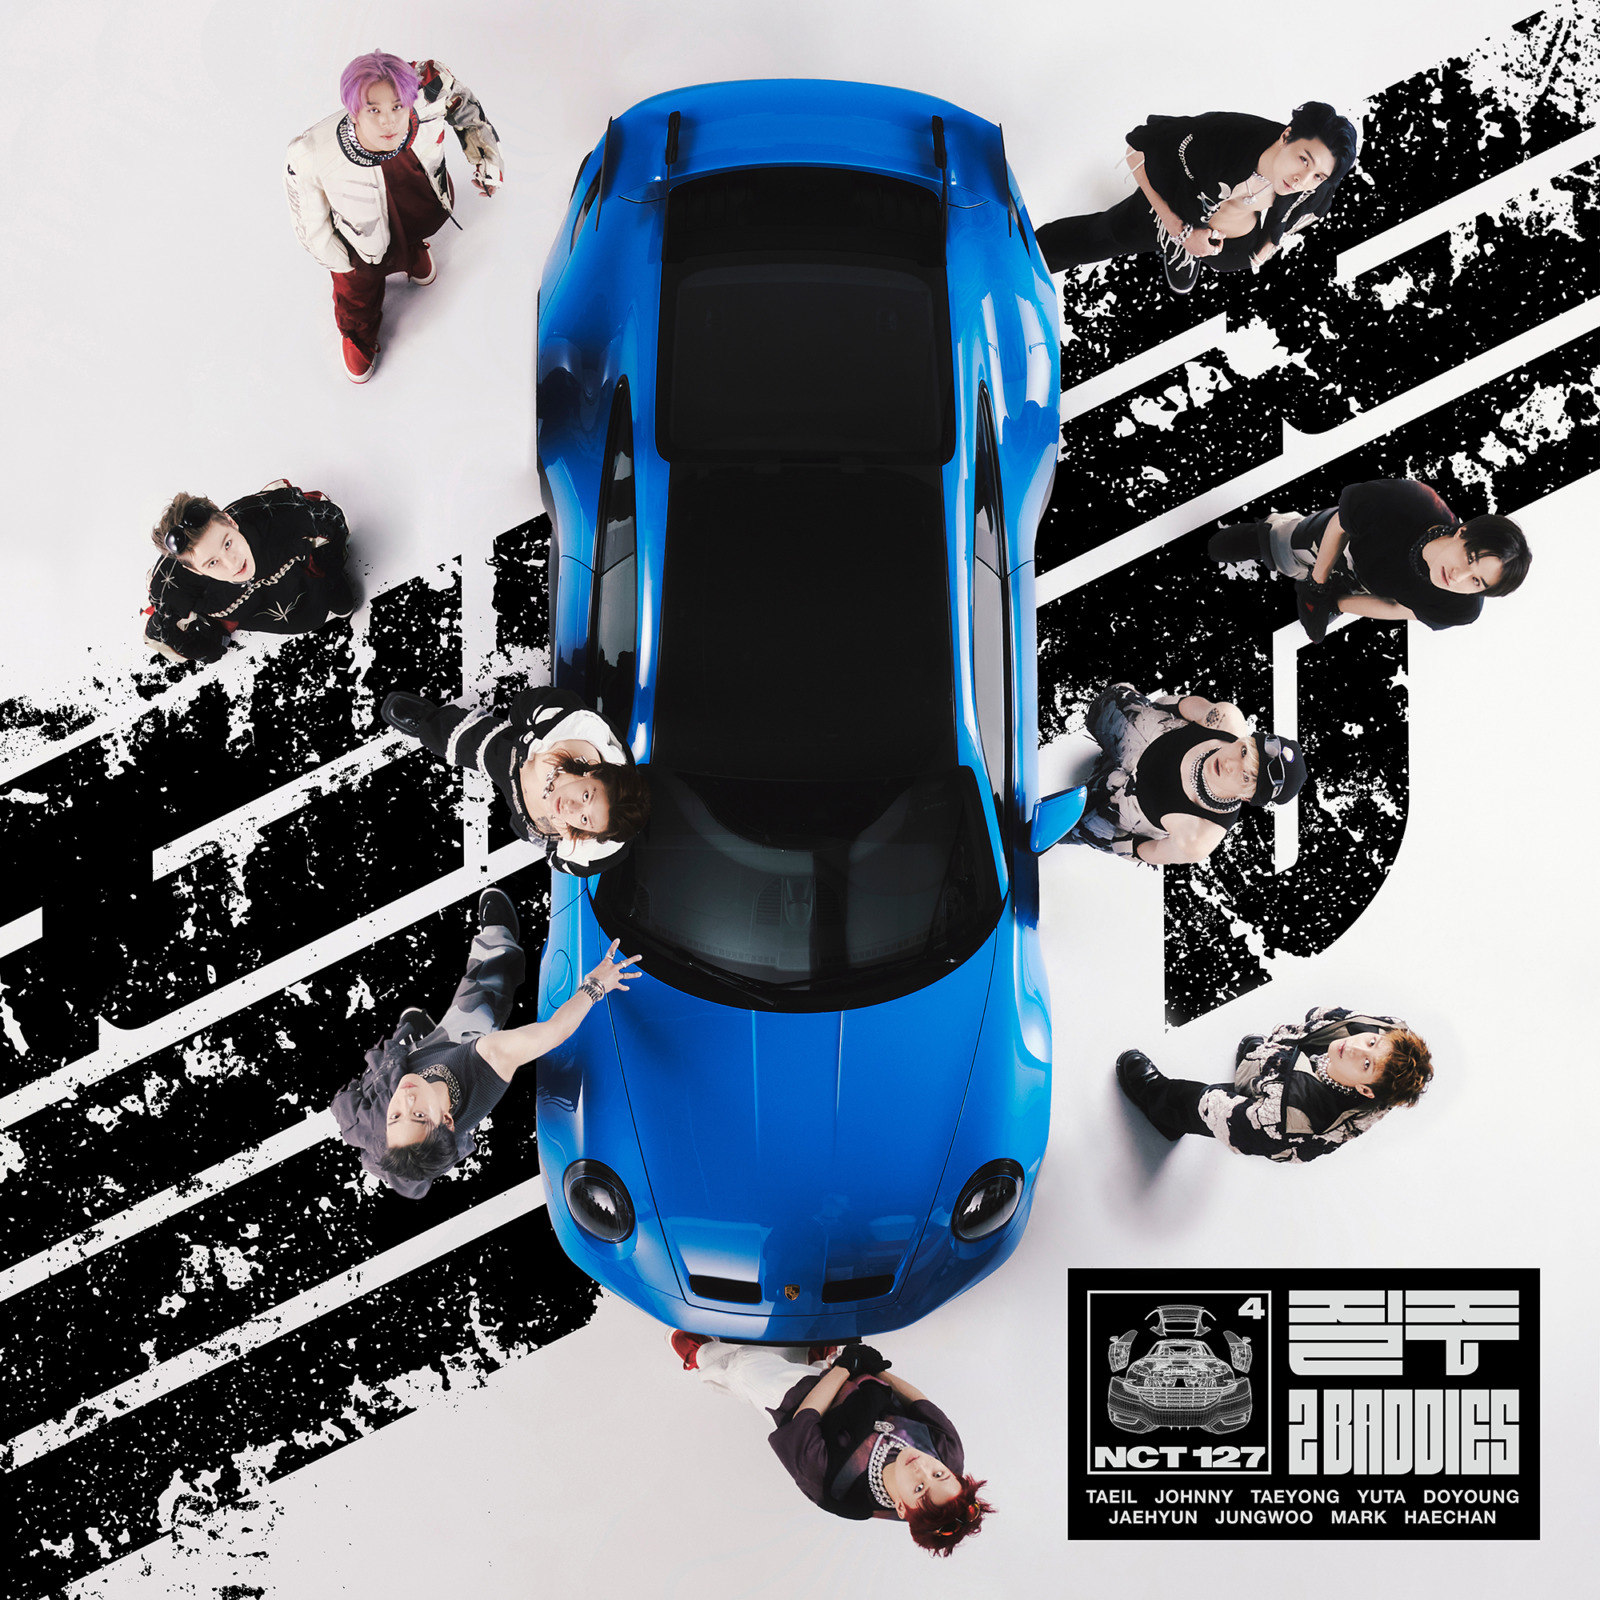 NCT127 4thフルアルバム「2 Baddies (ツーバッディーズ)」をリリース！タイトル曲はHIPHOPテイストのダンスナンバー